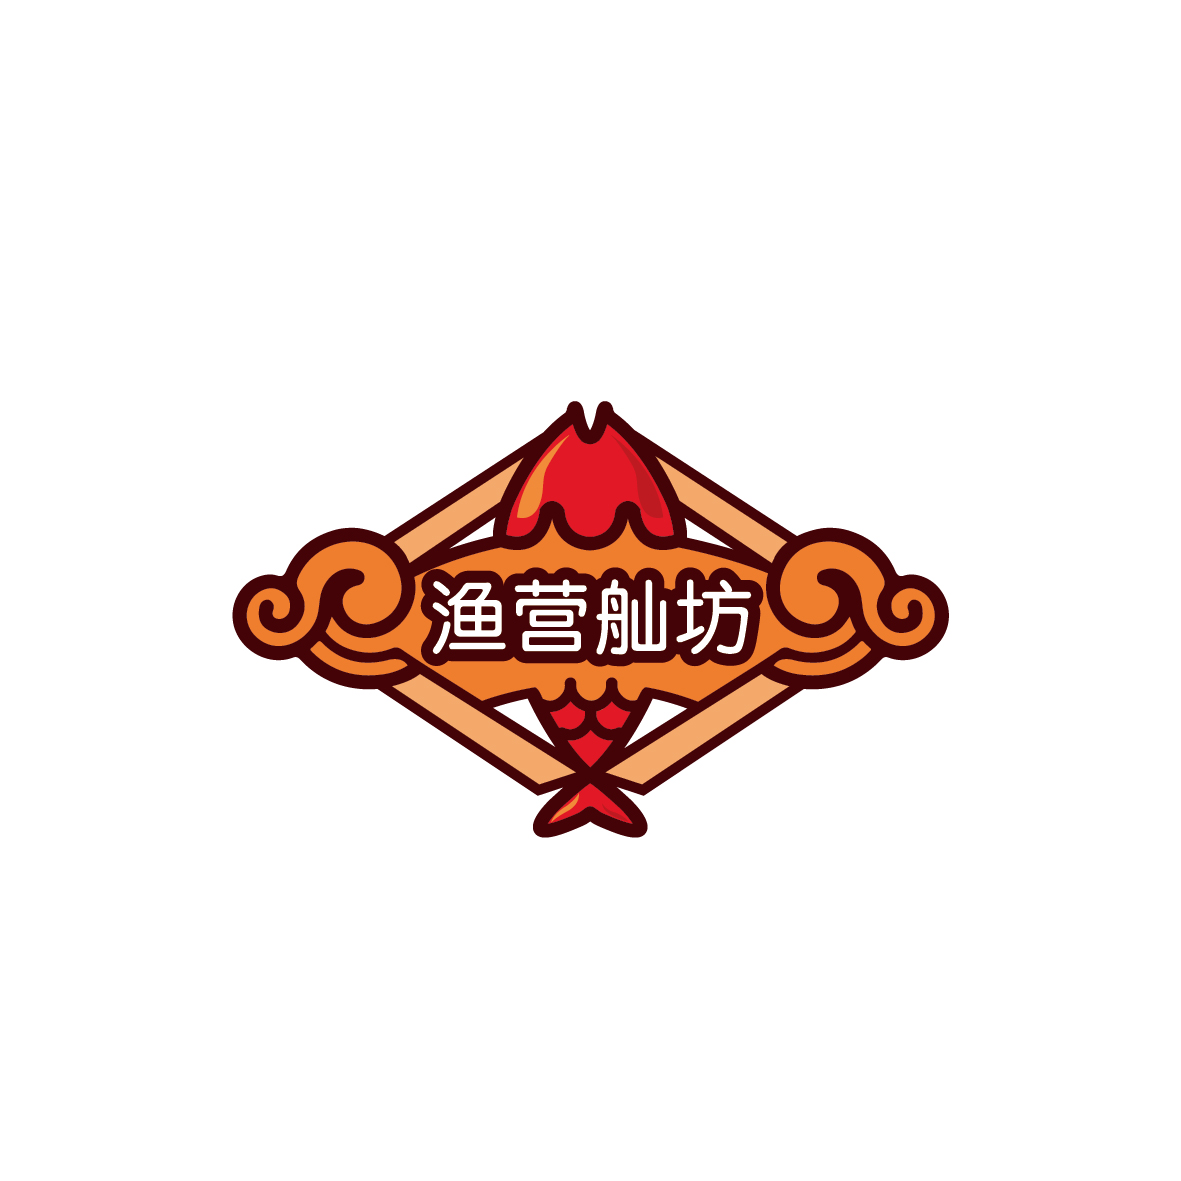 广州市巷陌电子商务商行商标渔营舢坊（43类）商标转让费用及联系方式